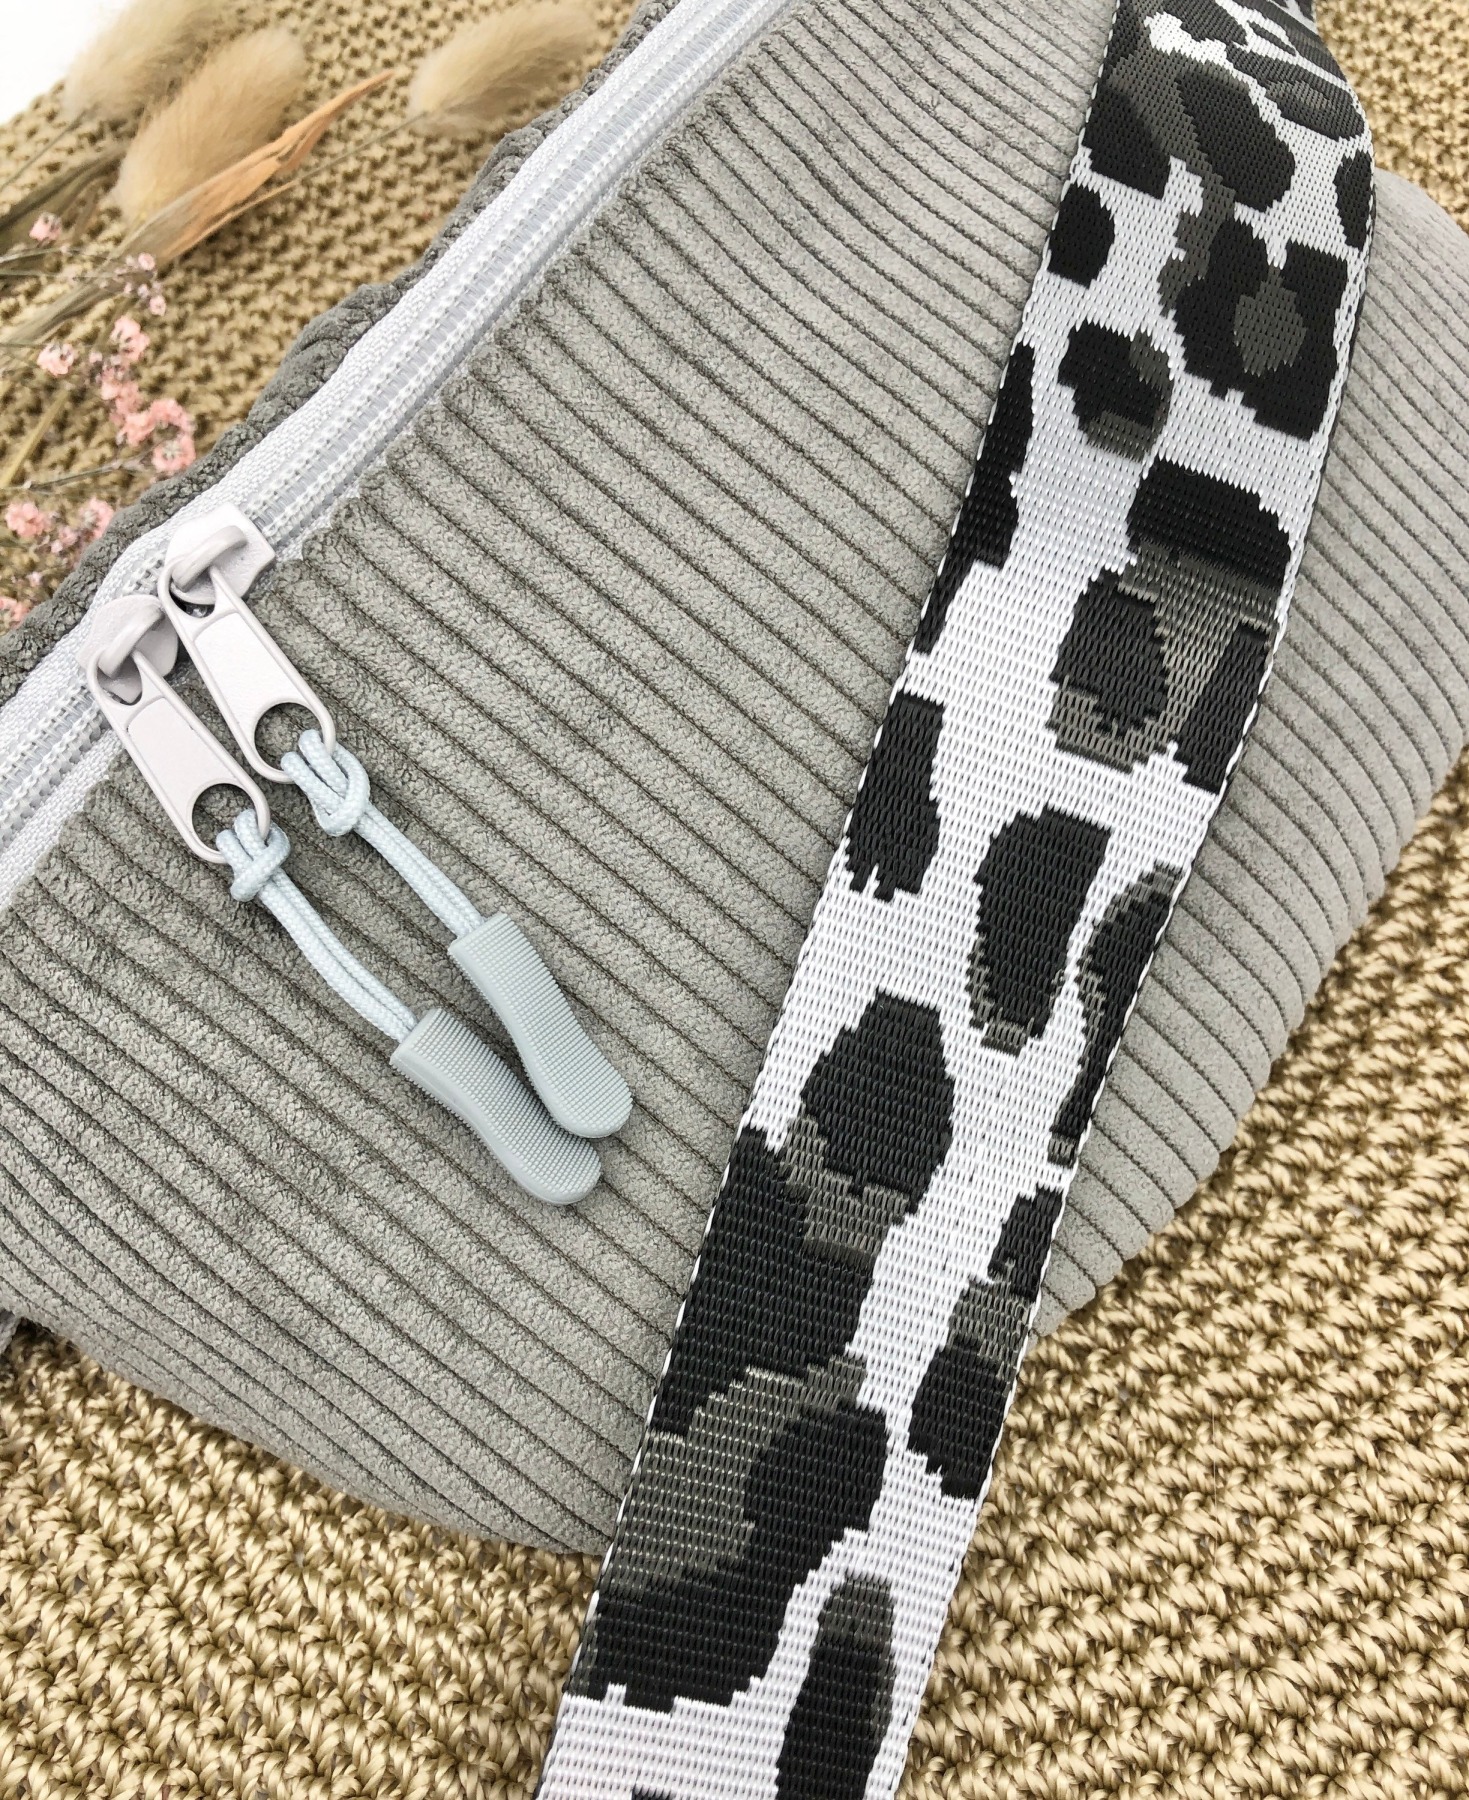 Bauchtasche Crossbag Cord graubeige mit Leogurt in schwarz weiß/Silber Tasche Cord grau beige